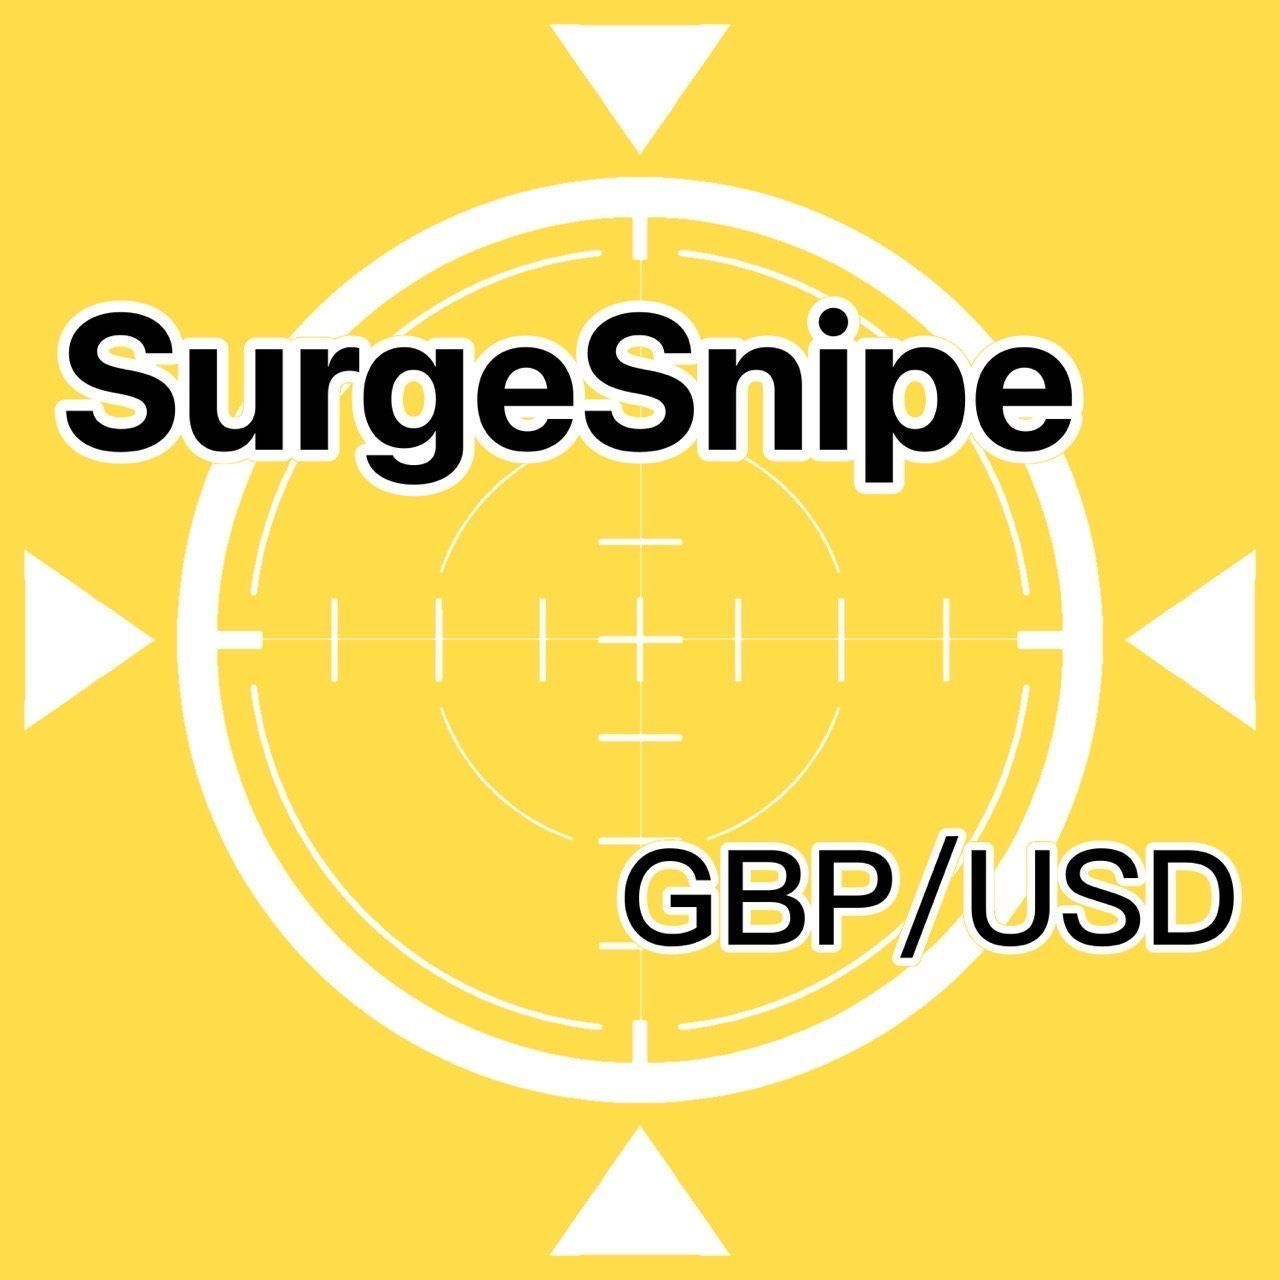 SurgeSnipe_GBPUSD 自動売買